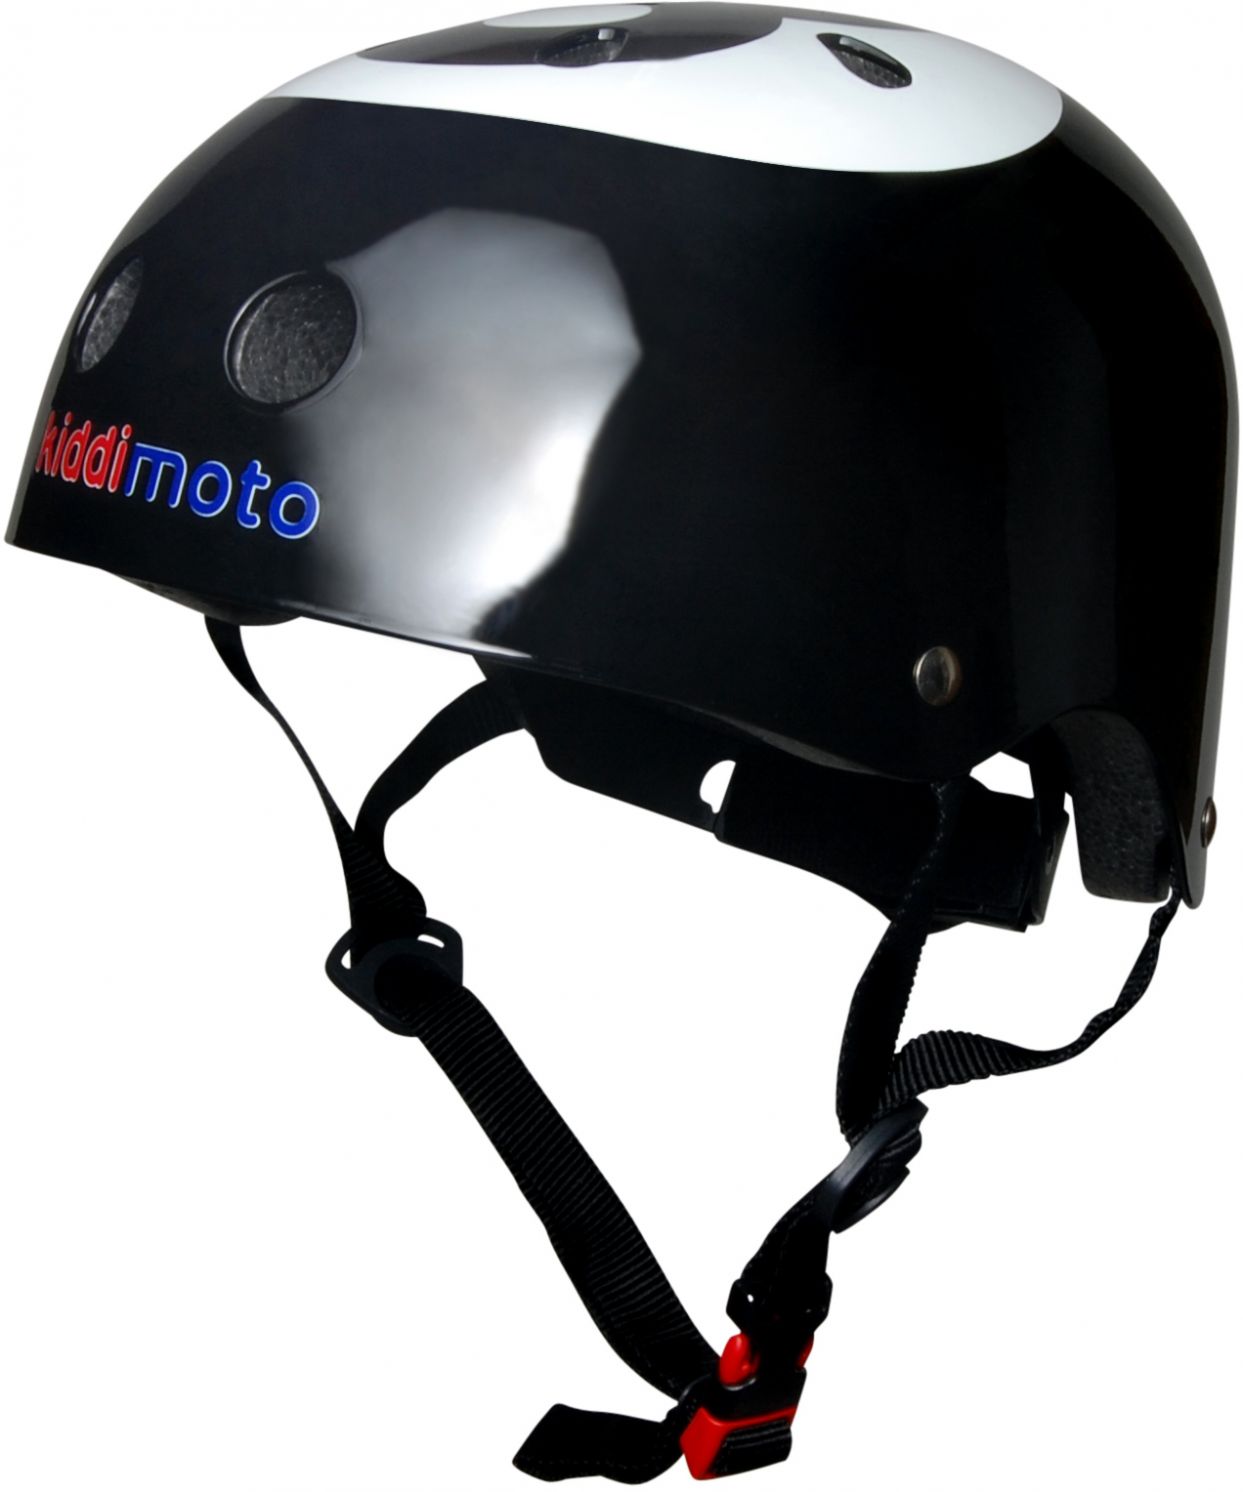 Шлем детский Kiddimoto бильярдный шар, чёрный, размер M 53-58см фото 1